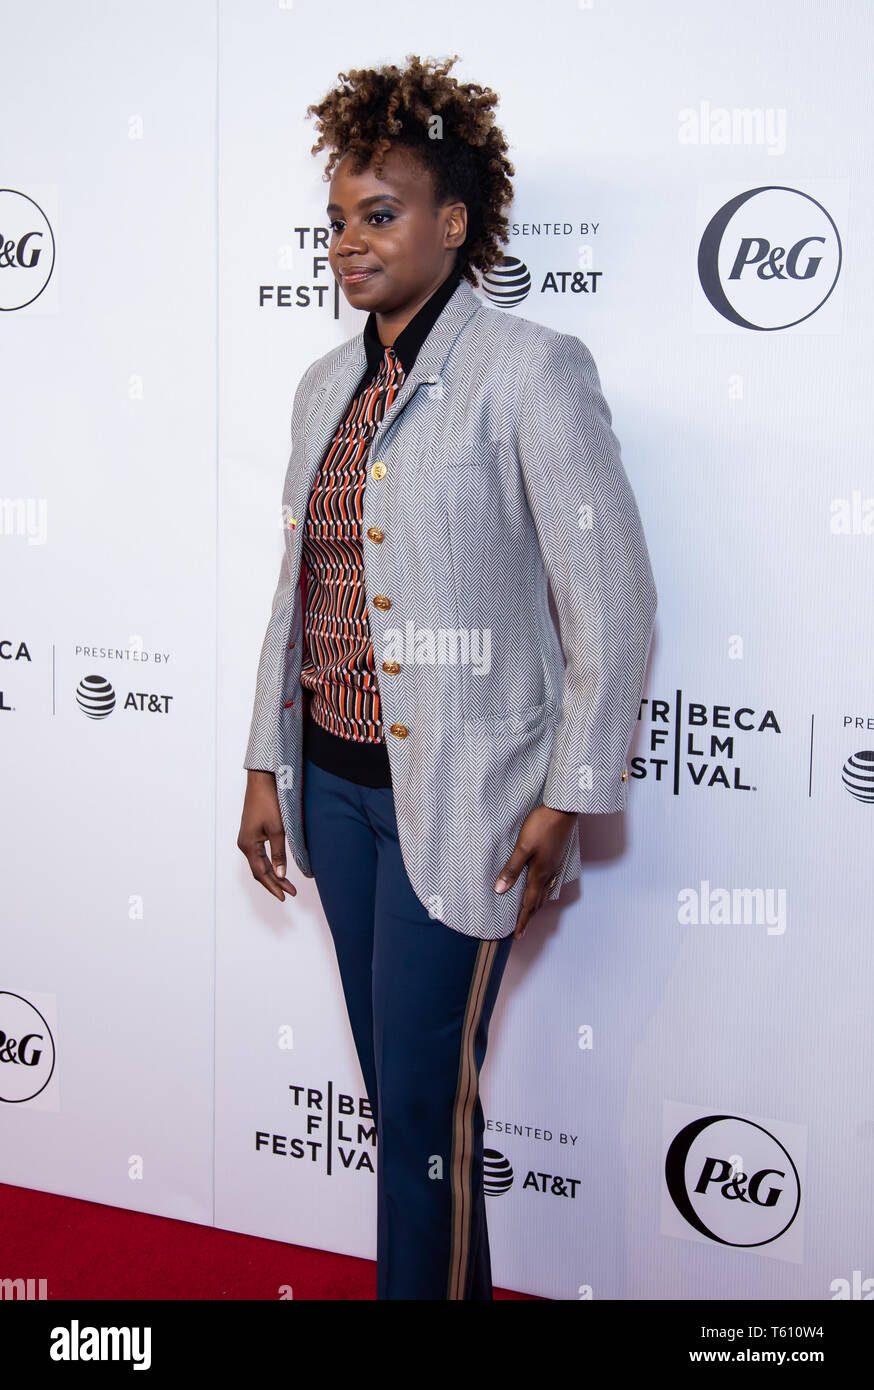 Manhattan, New York/USA - Aprile 26, 2019: Tribeca Film Festival, tappeto rosso per la premiere di Regina pantaloncini collettiva con Queen Latifah Foto Stock